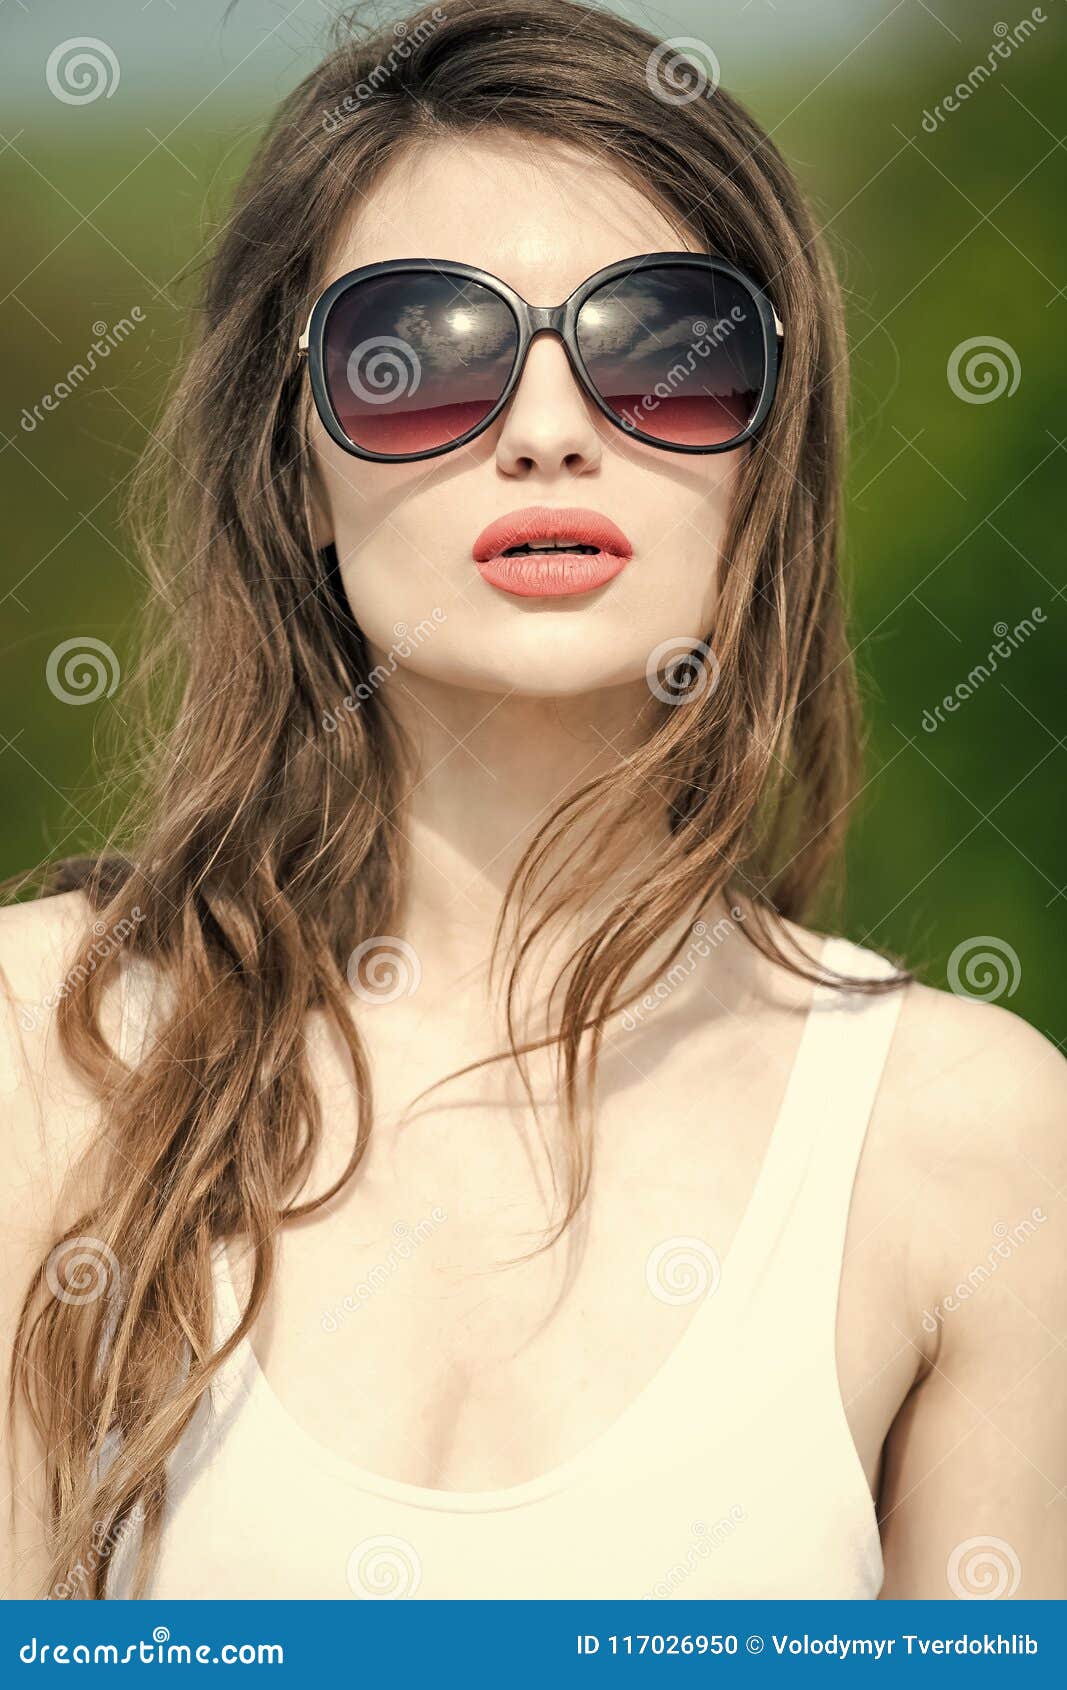 Presentación Modelo De La De La Moda Mujer En Gafas De Del Verano Con El Pelo Moreno Largo Foto archivo - Imagen de exterior, labio: 117026950